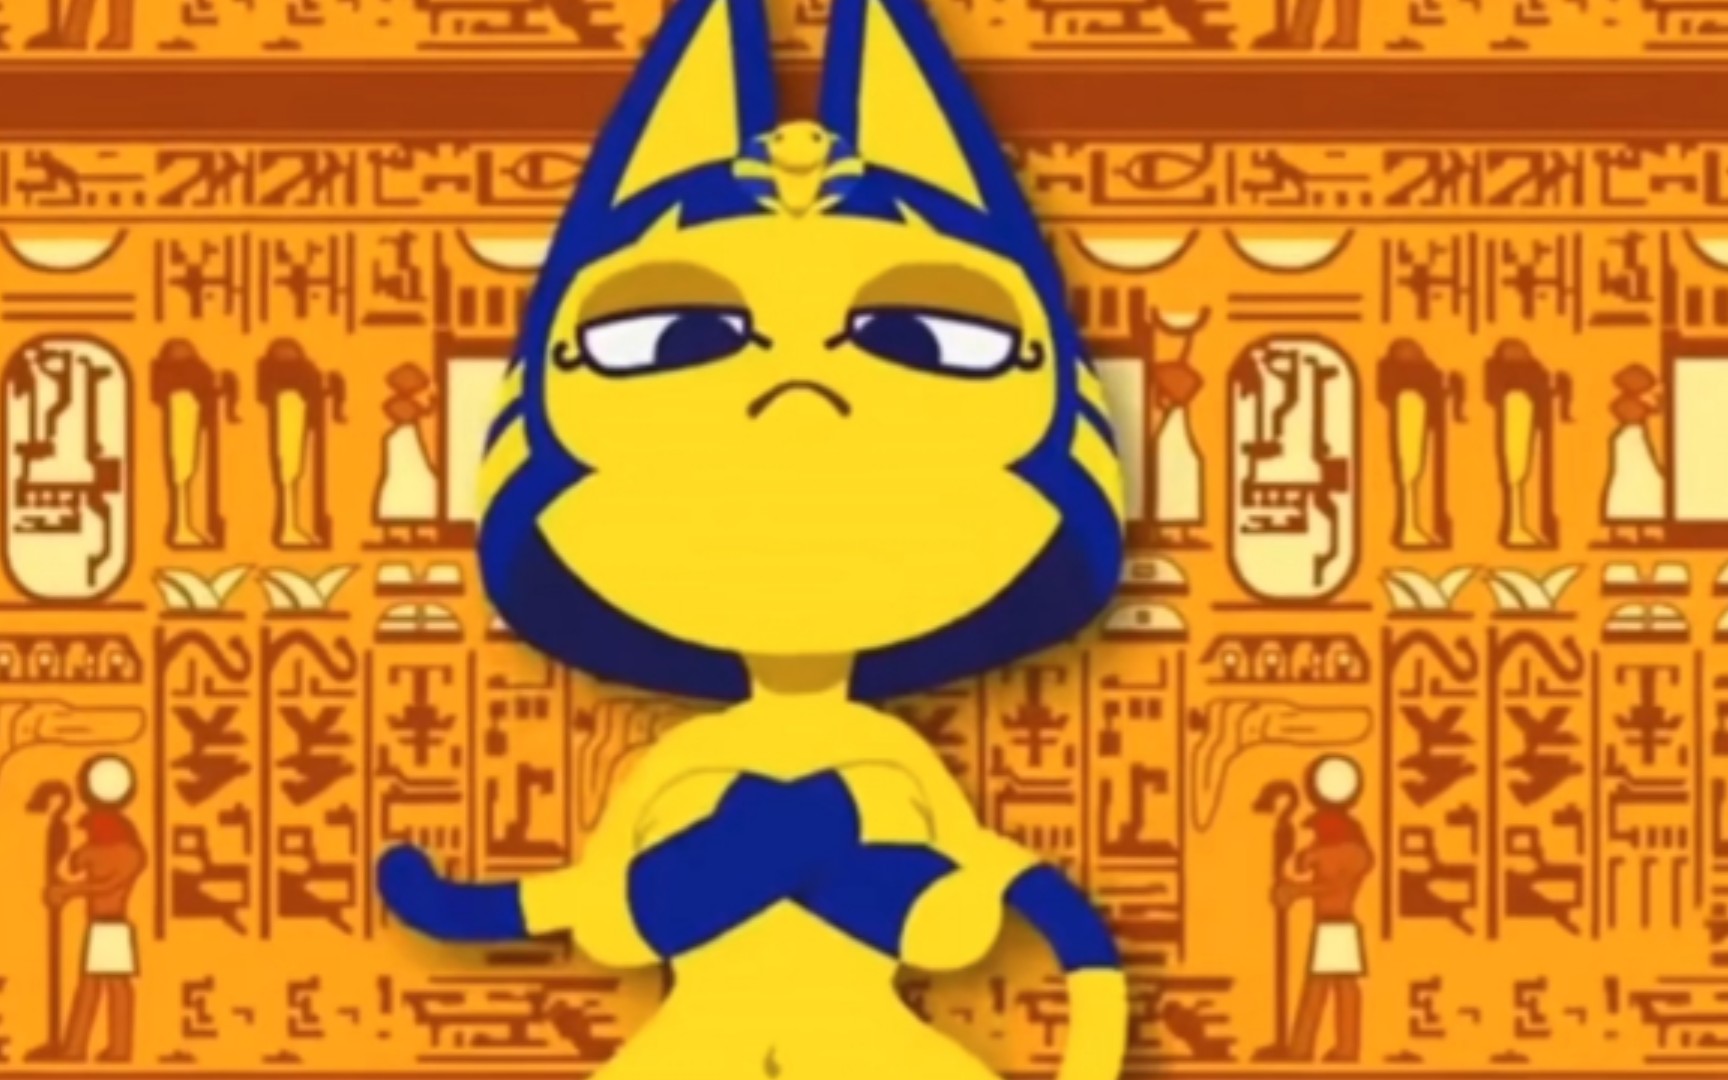 埃及猫女神跳舞图片